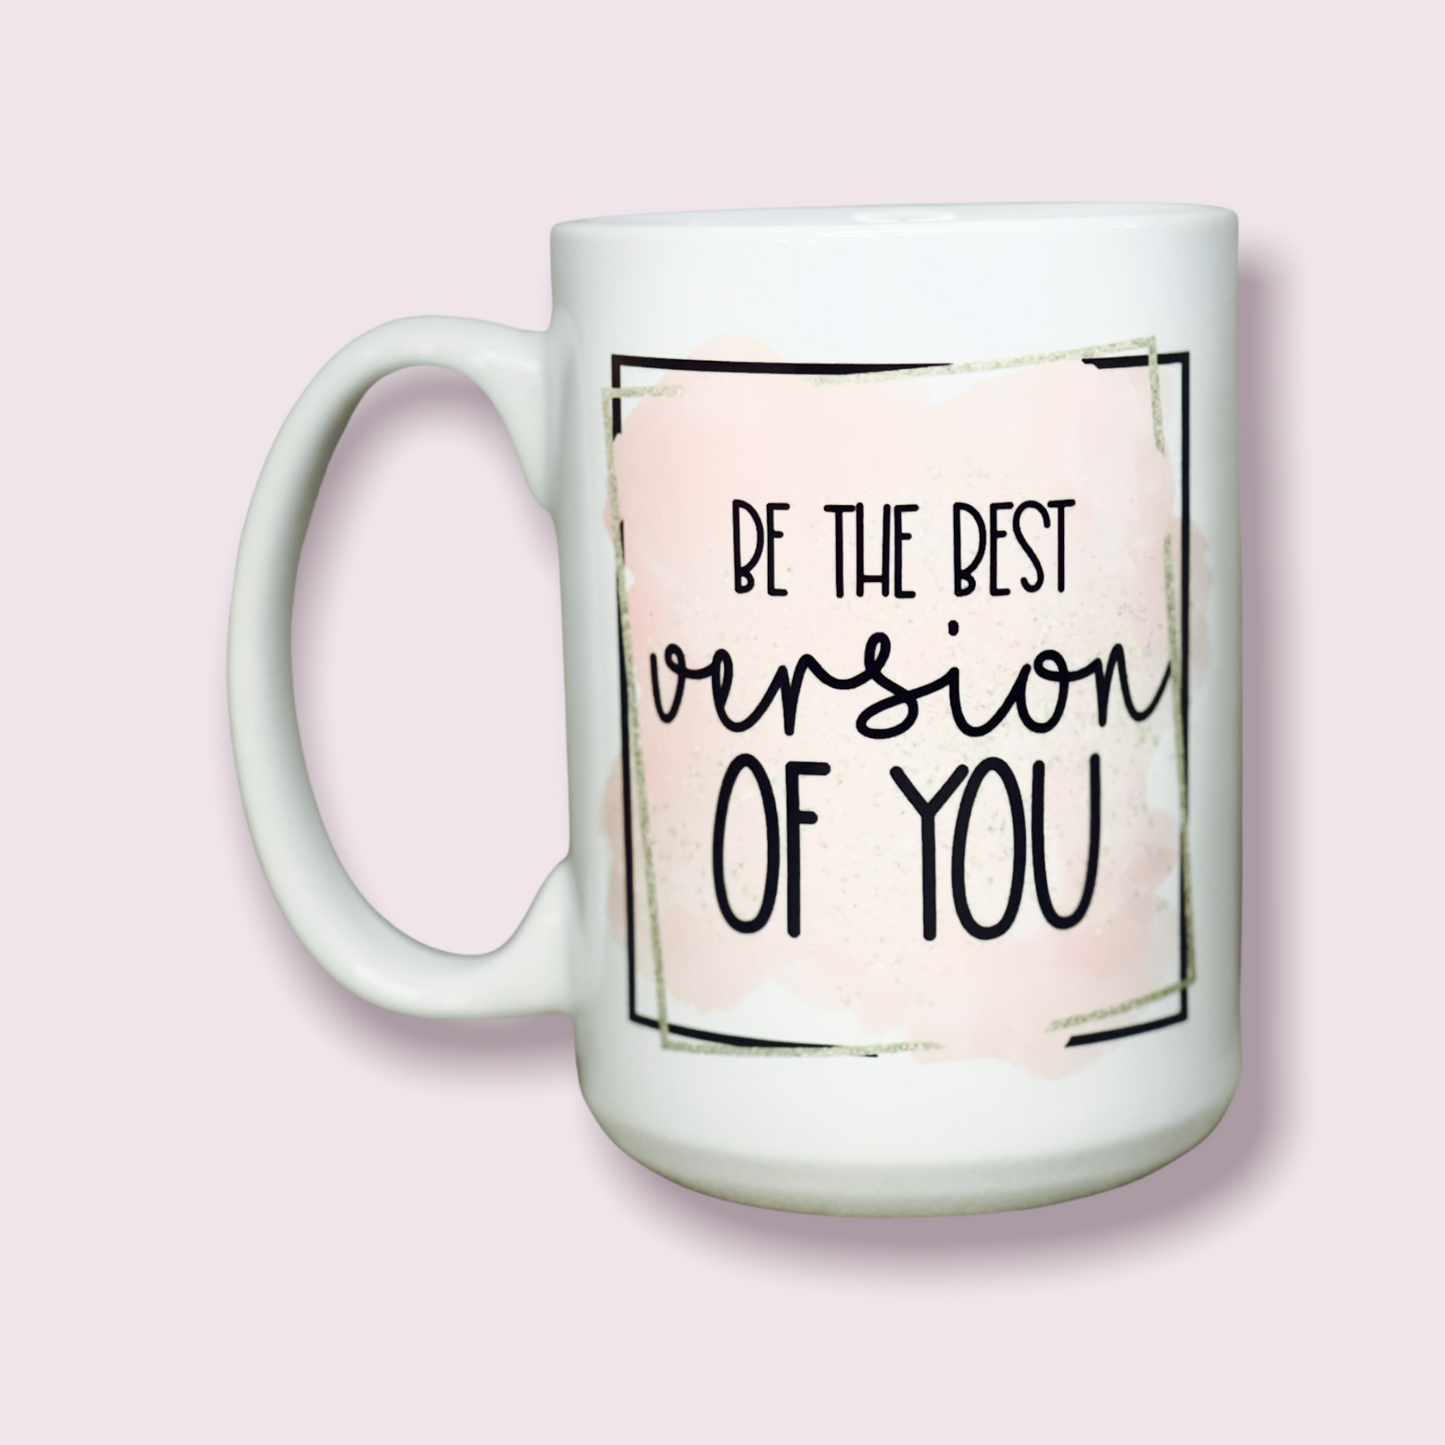 15oz “Sip of Encouragement” Mug (click for multiple design options)